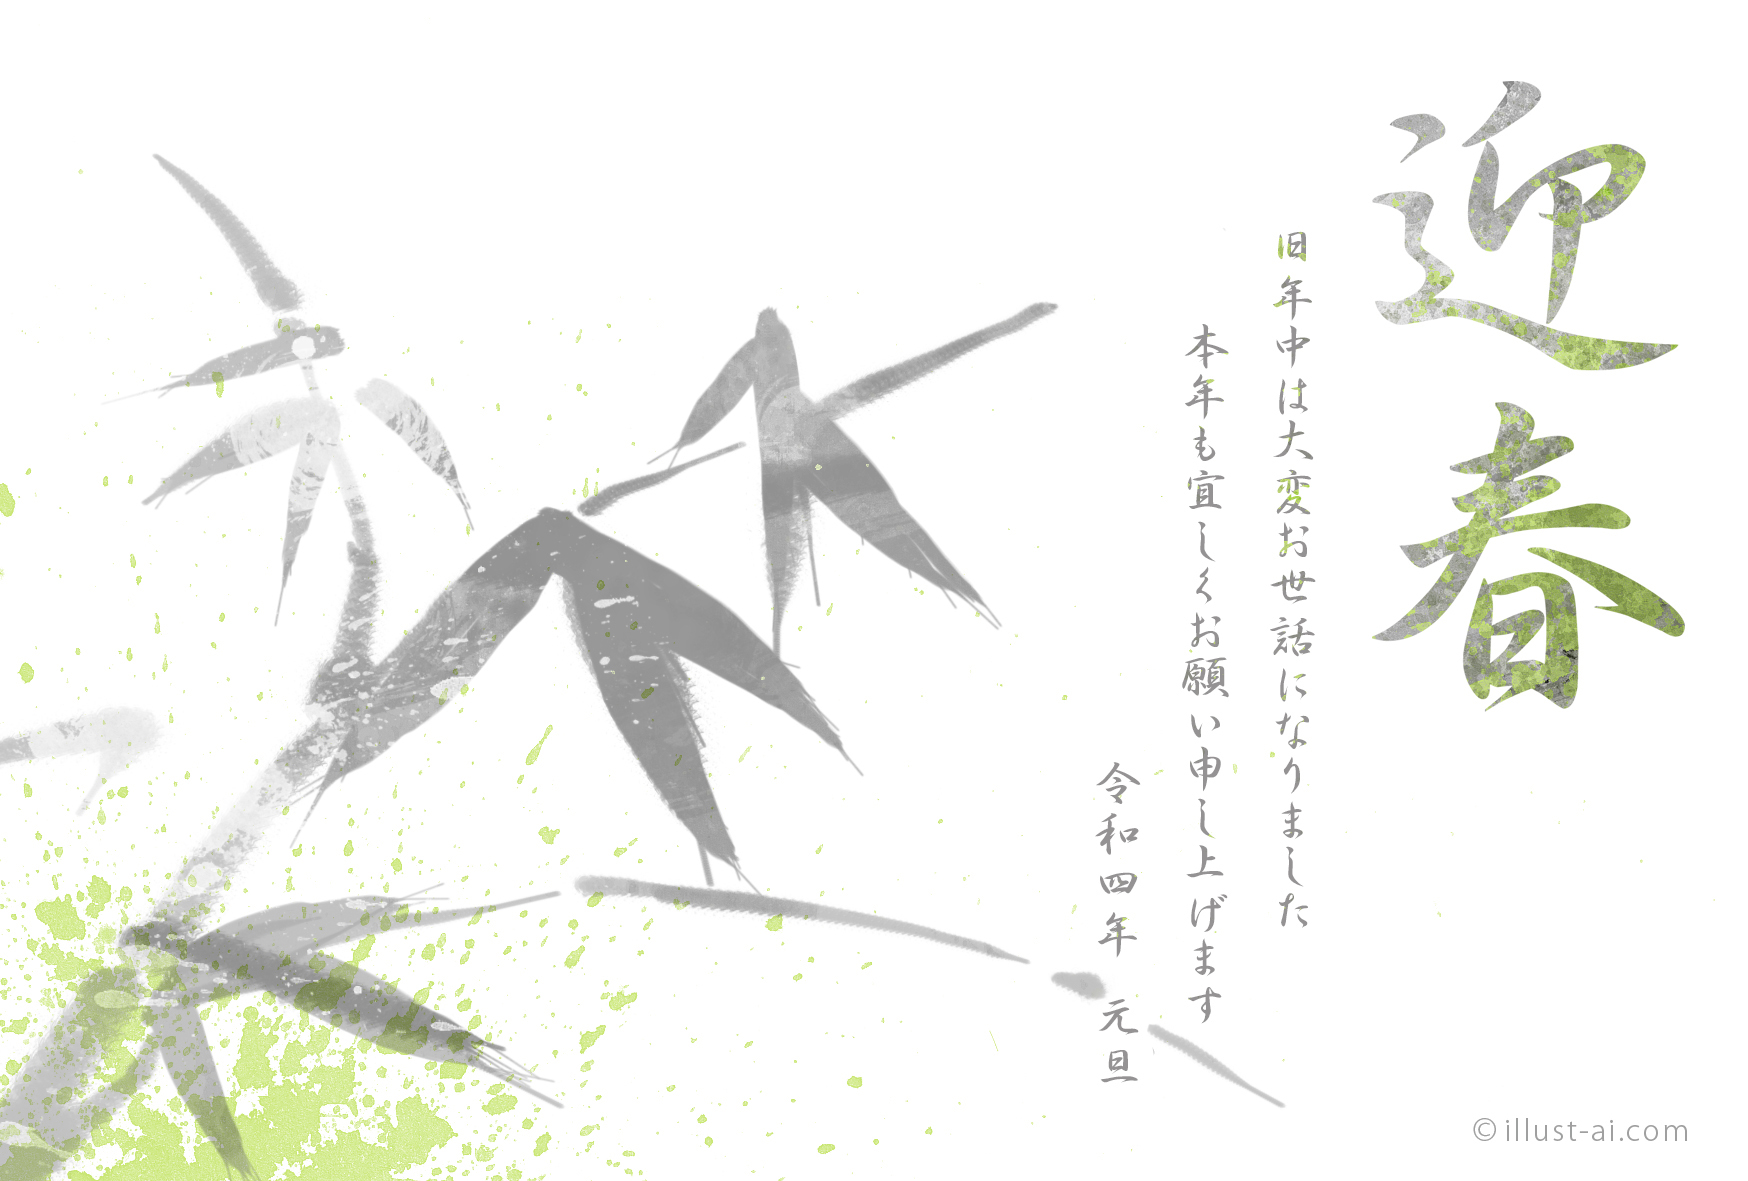 年賀状 寅年 かっこいい印象の竹の水墨画風イラスト 年賀状22無料イラスト素材集